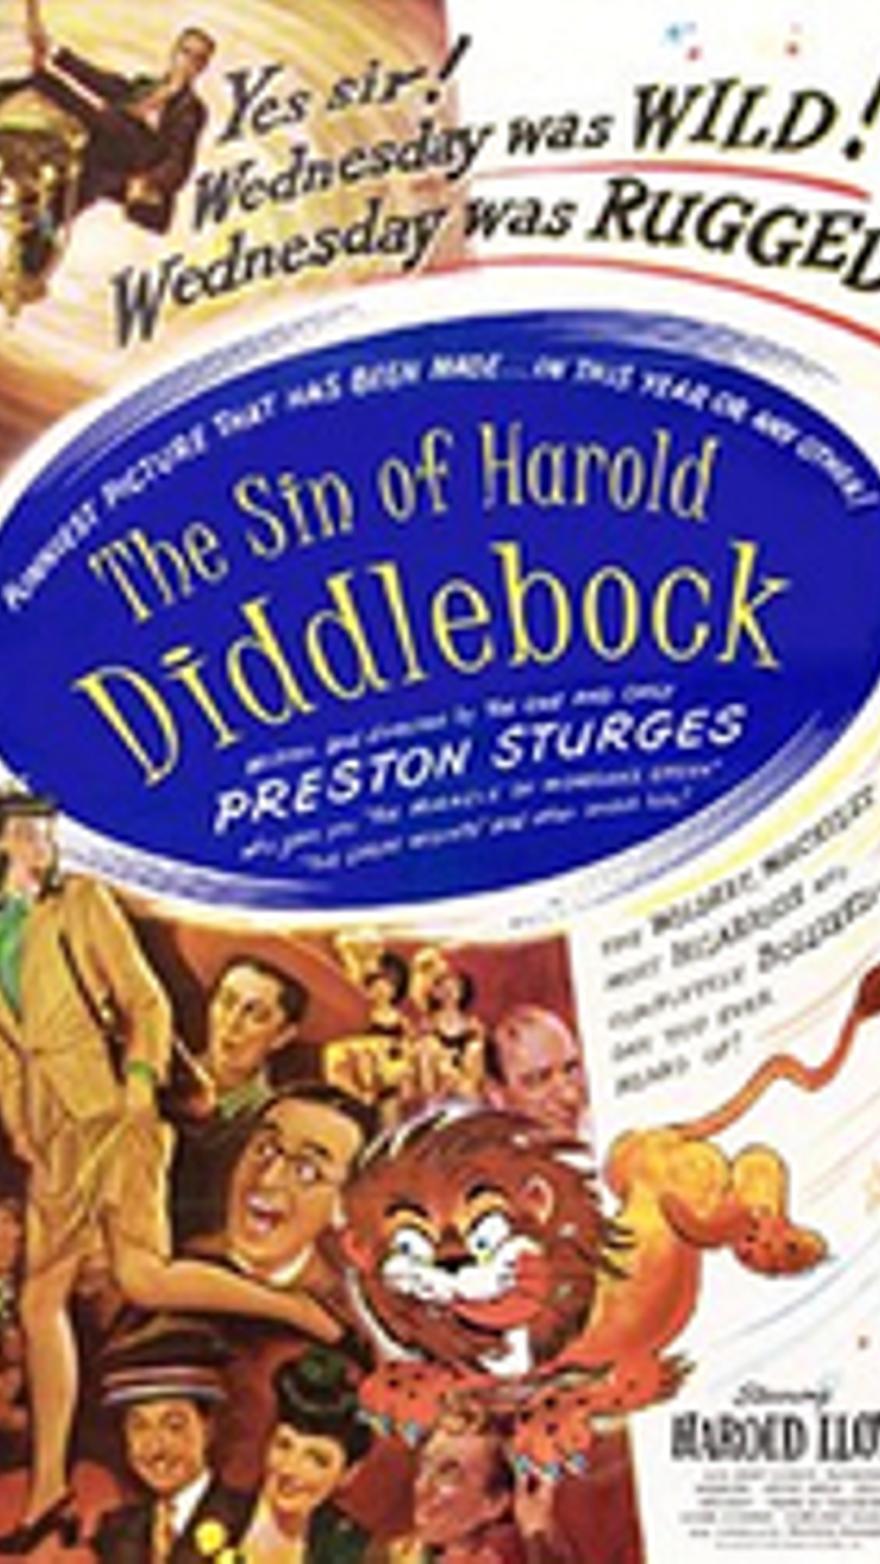 El pecado de Harold Diddlebock